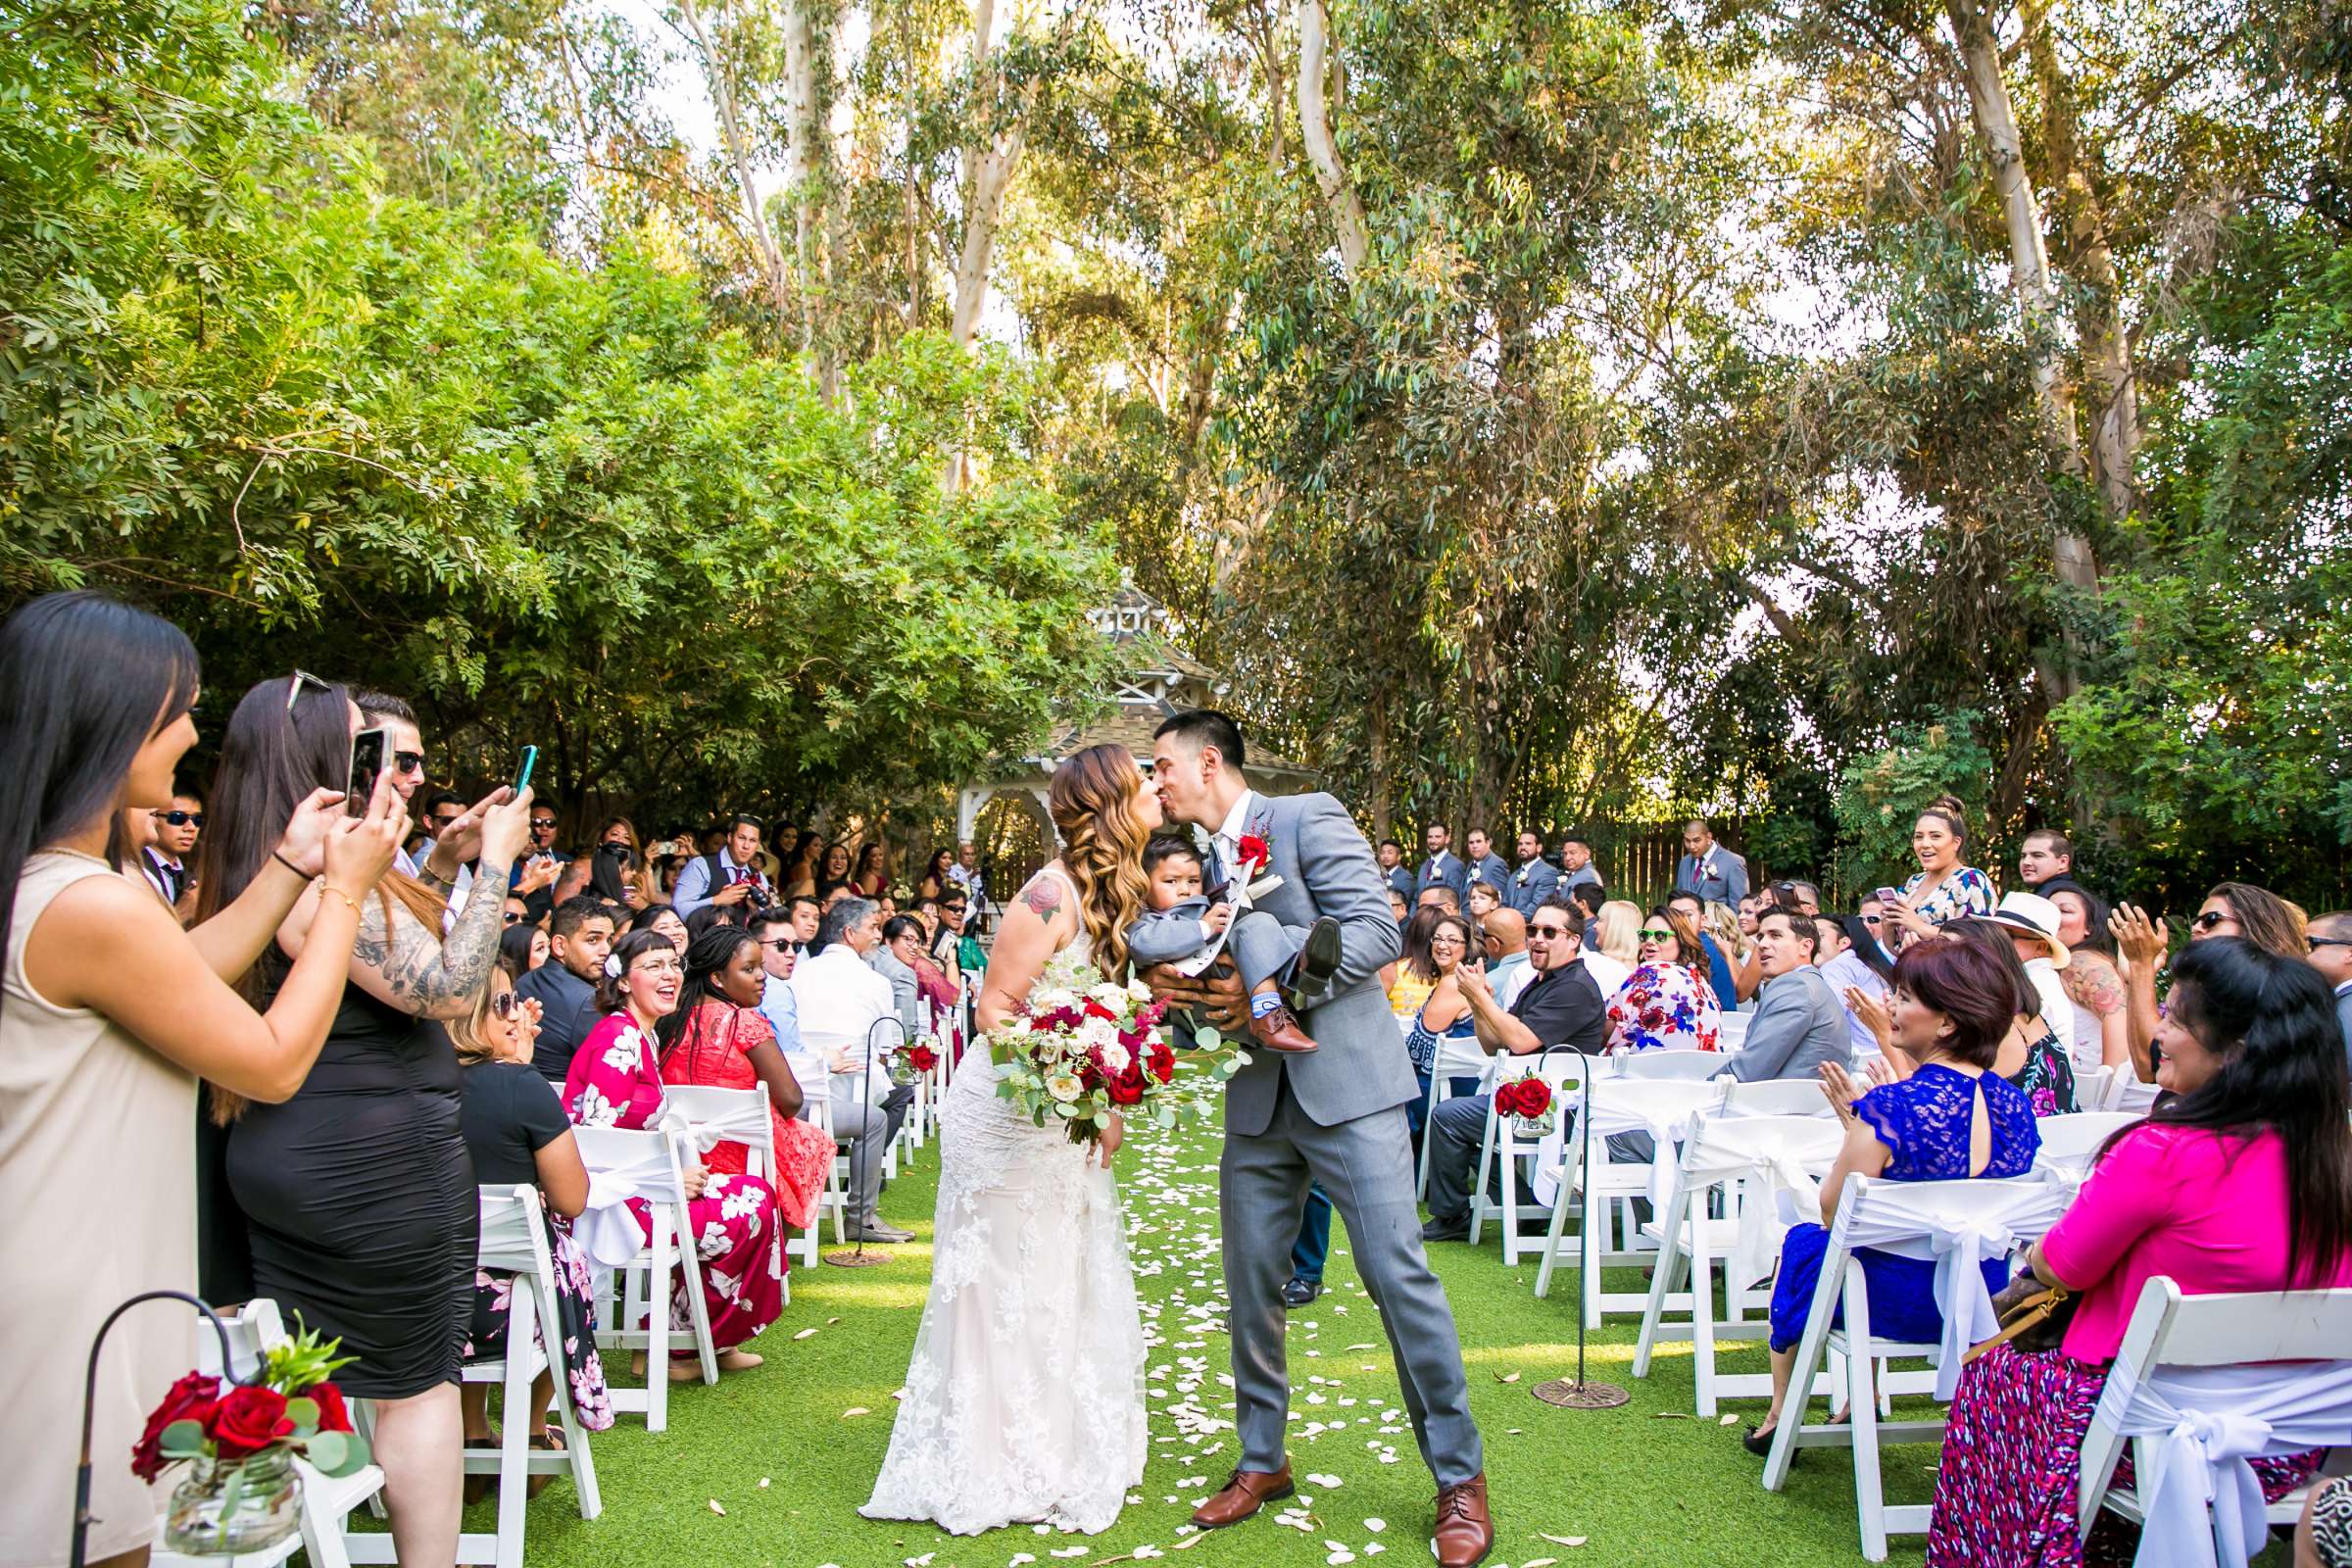 Twin Oaks House & Gardens Wedding Estate Wedding, Merrilynn and Trey Wedding Photo #22 by True Photography